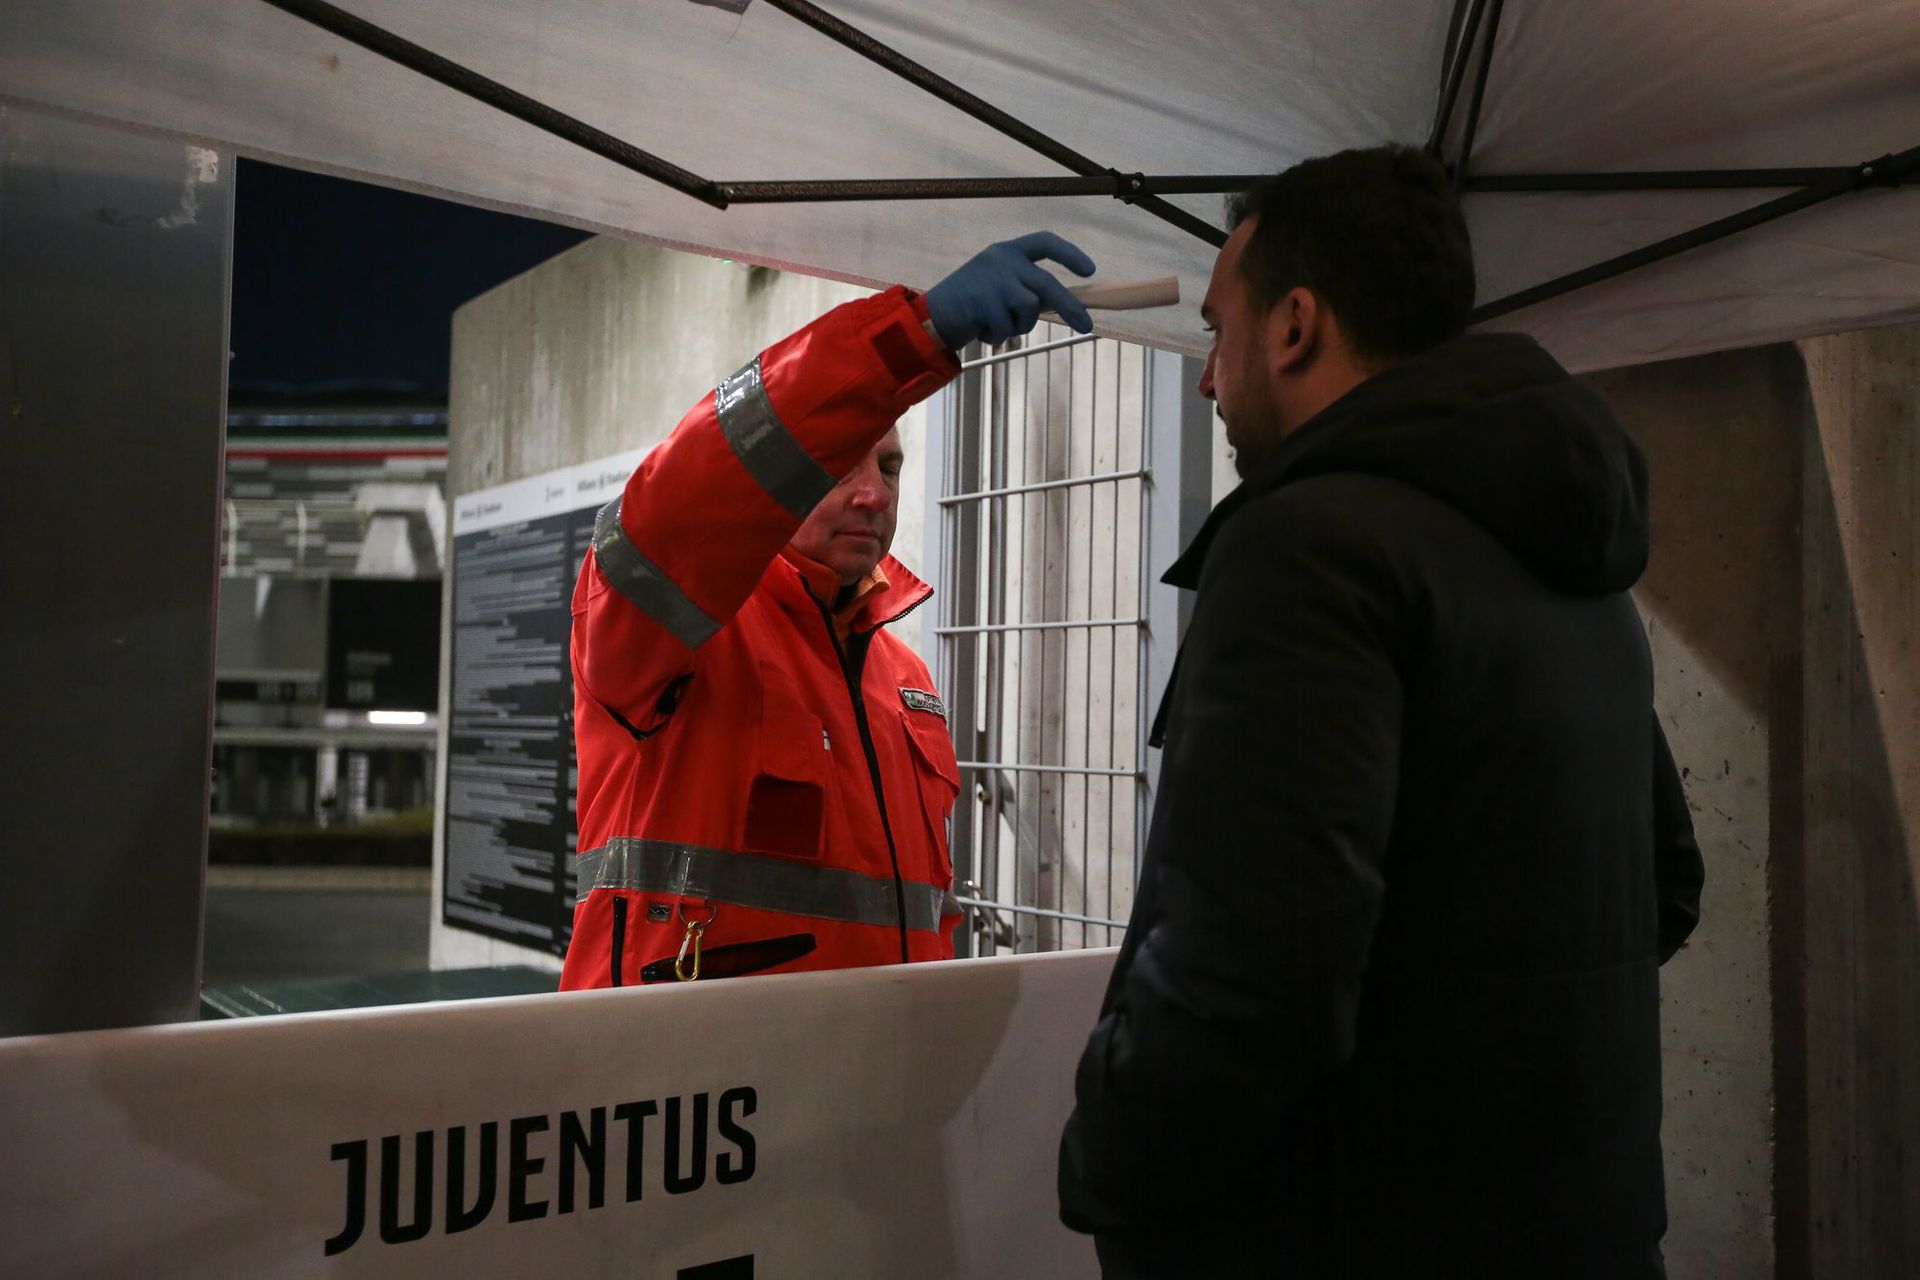 Akik bemehettek a Juve stadionjába, például az újságírók, ellenőrzésen estek át. Fotó: GETTY IMAEGS